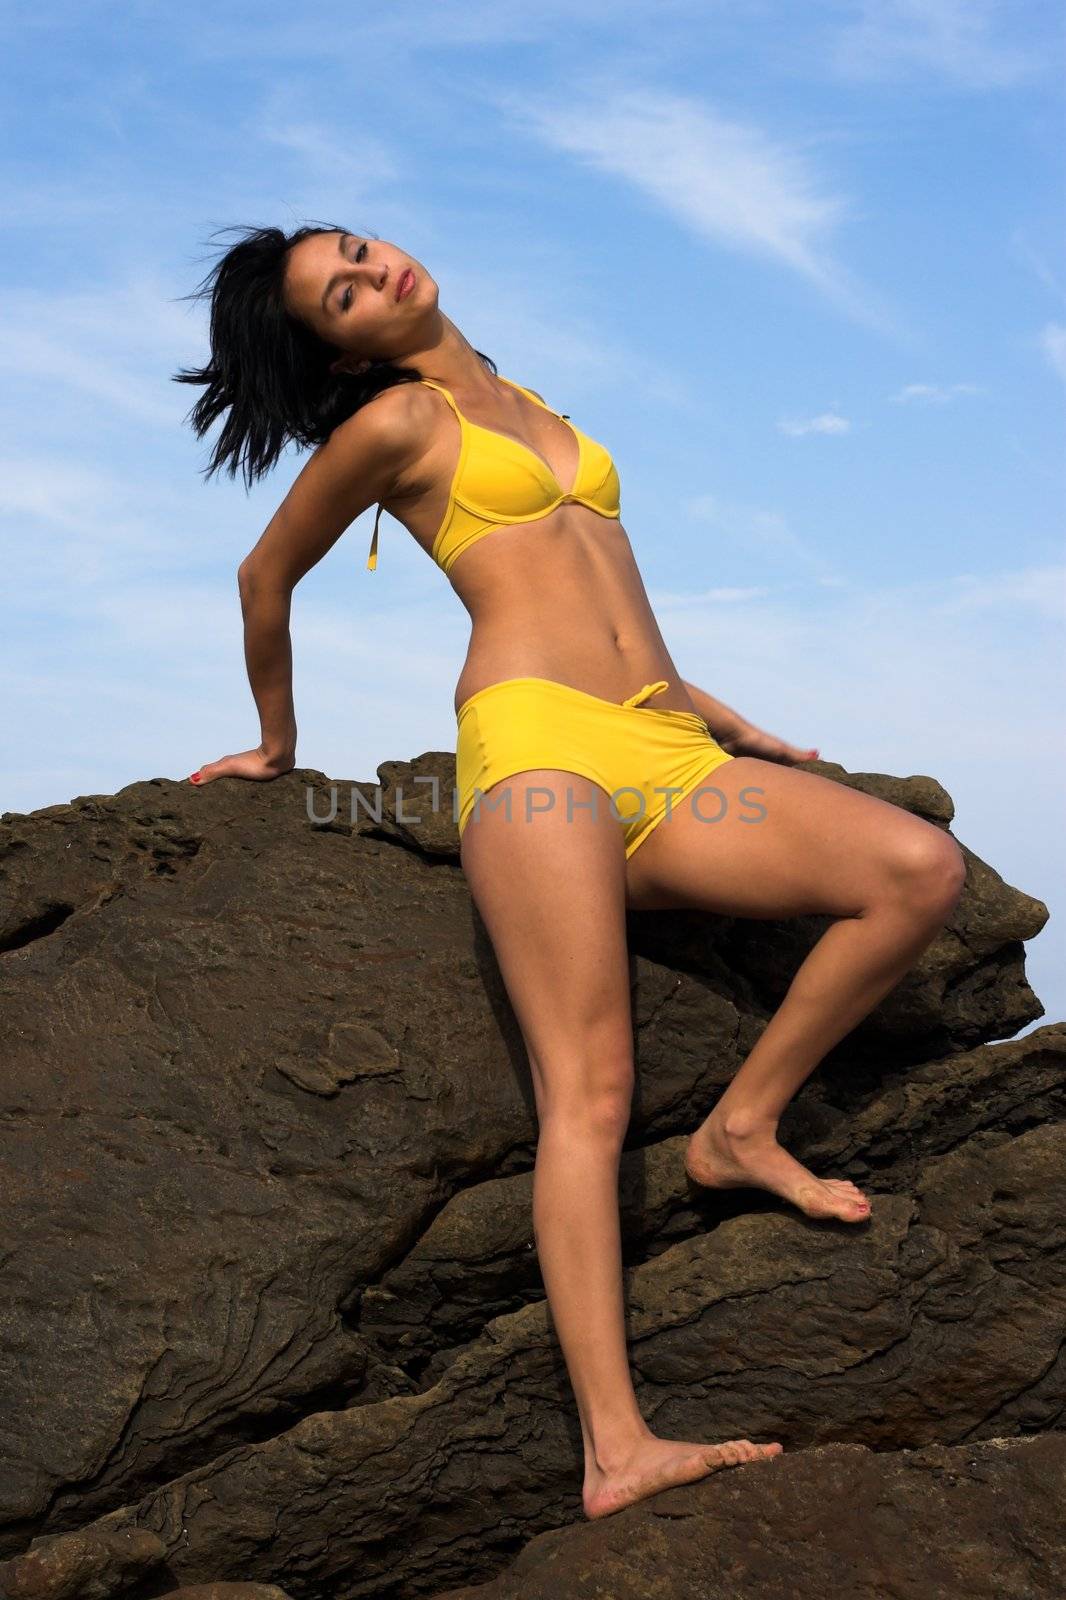 Girl on Rock in Yellow Bikini